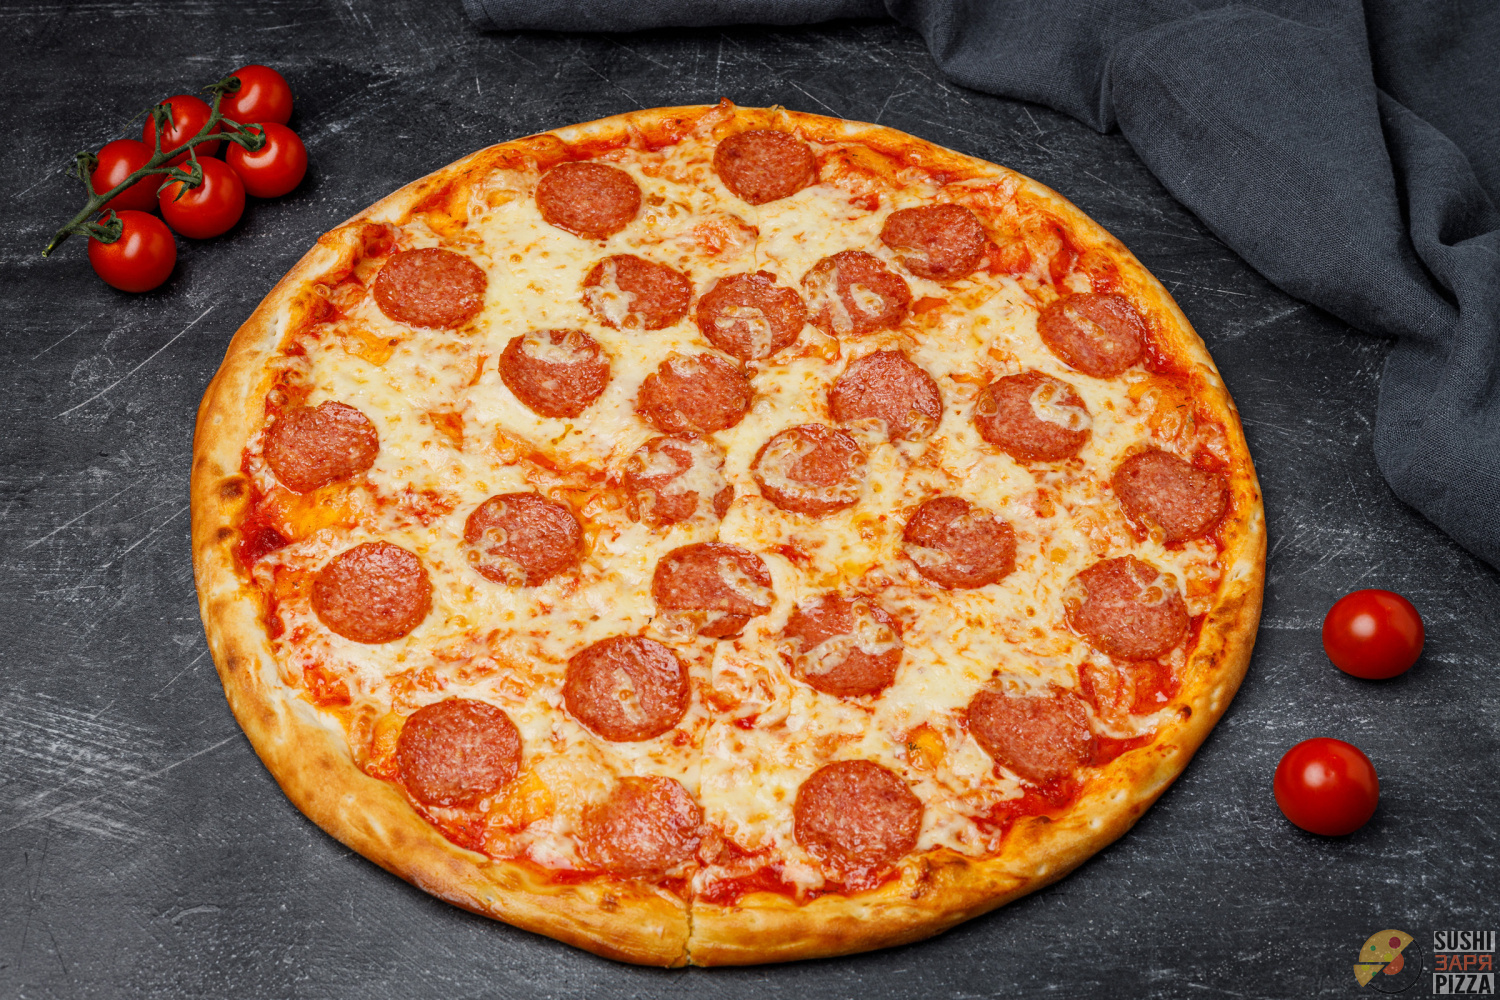 средняя стоимость пиццы пепперони фото 76